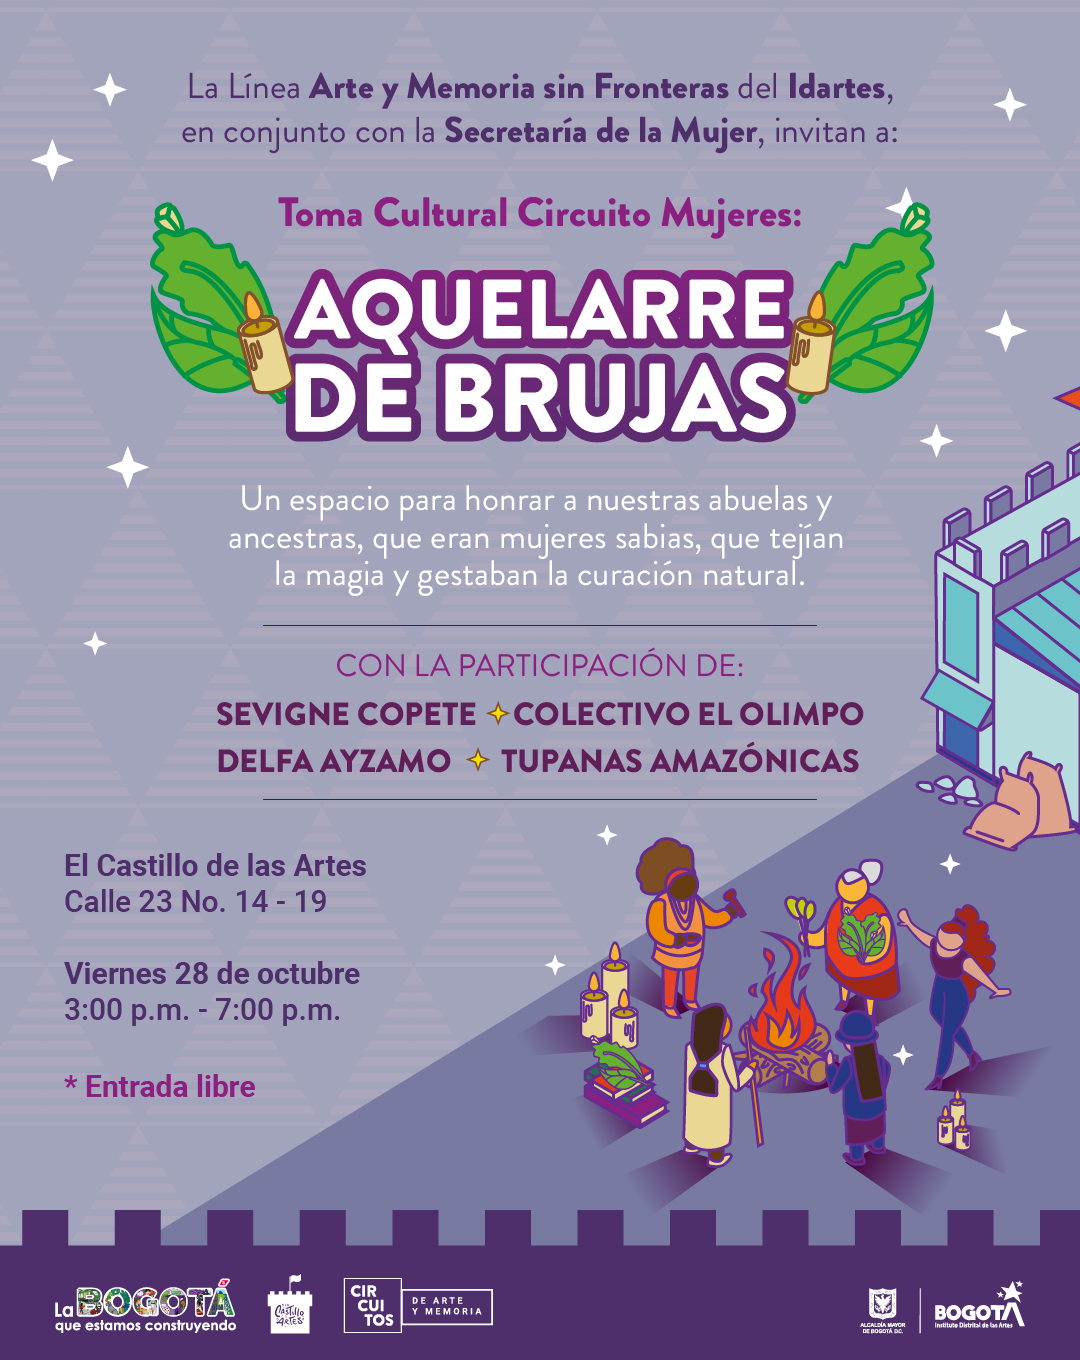 Pieza gráfica de invitación a la La Toma Cultural Circuito Mujeres: Aquelarre de Brujas.